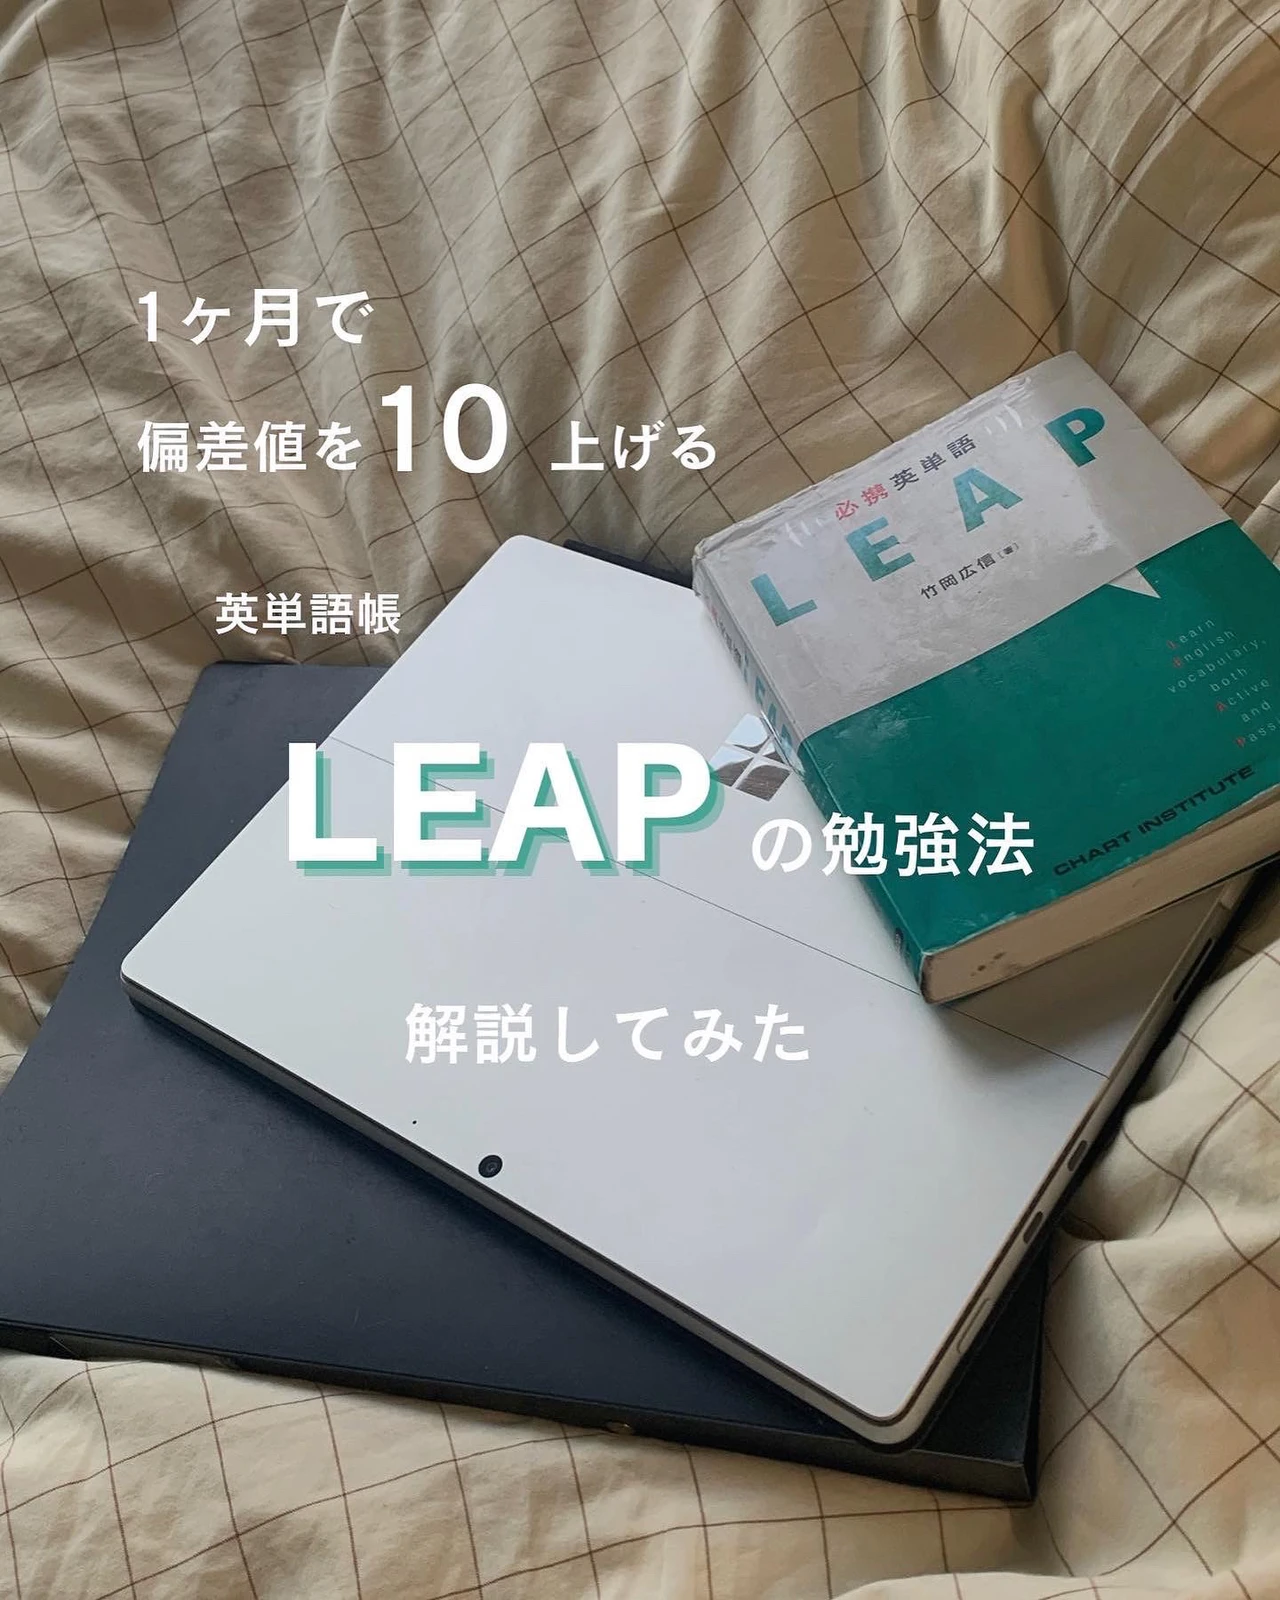 偏差値10上げる 英単語帳leapの勉強法 ま す け んが投稿したフォトブック Lemon8